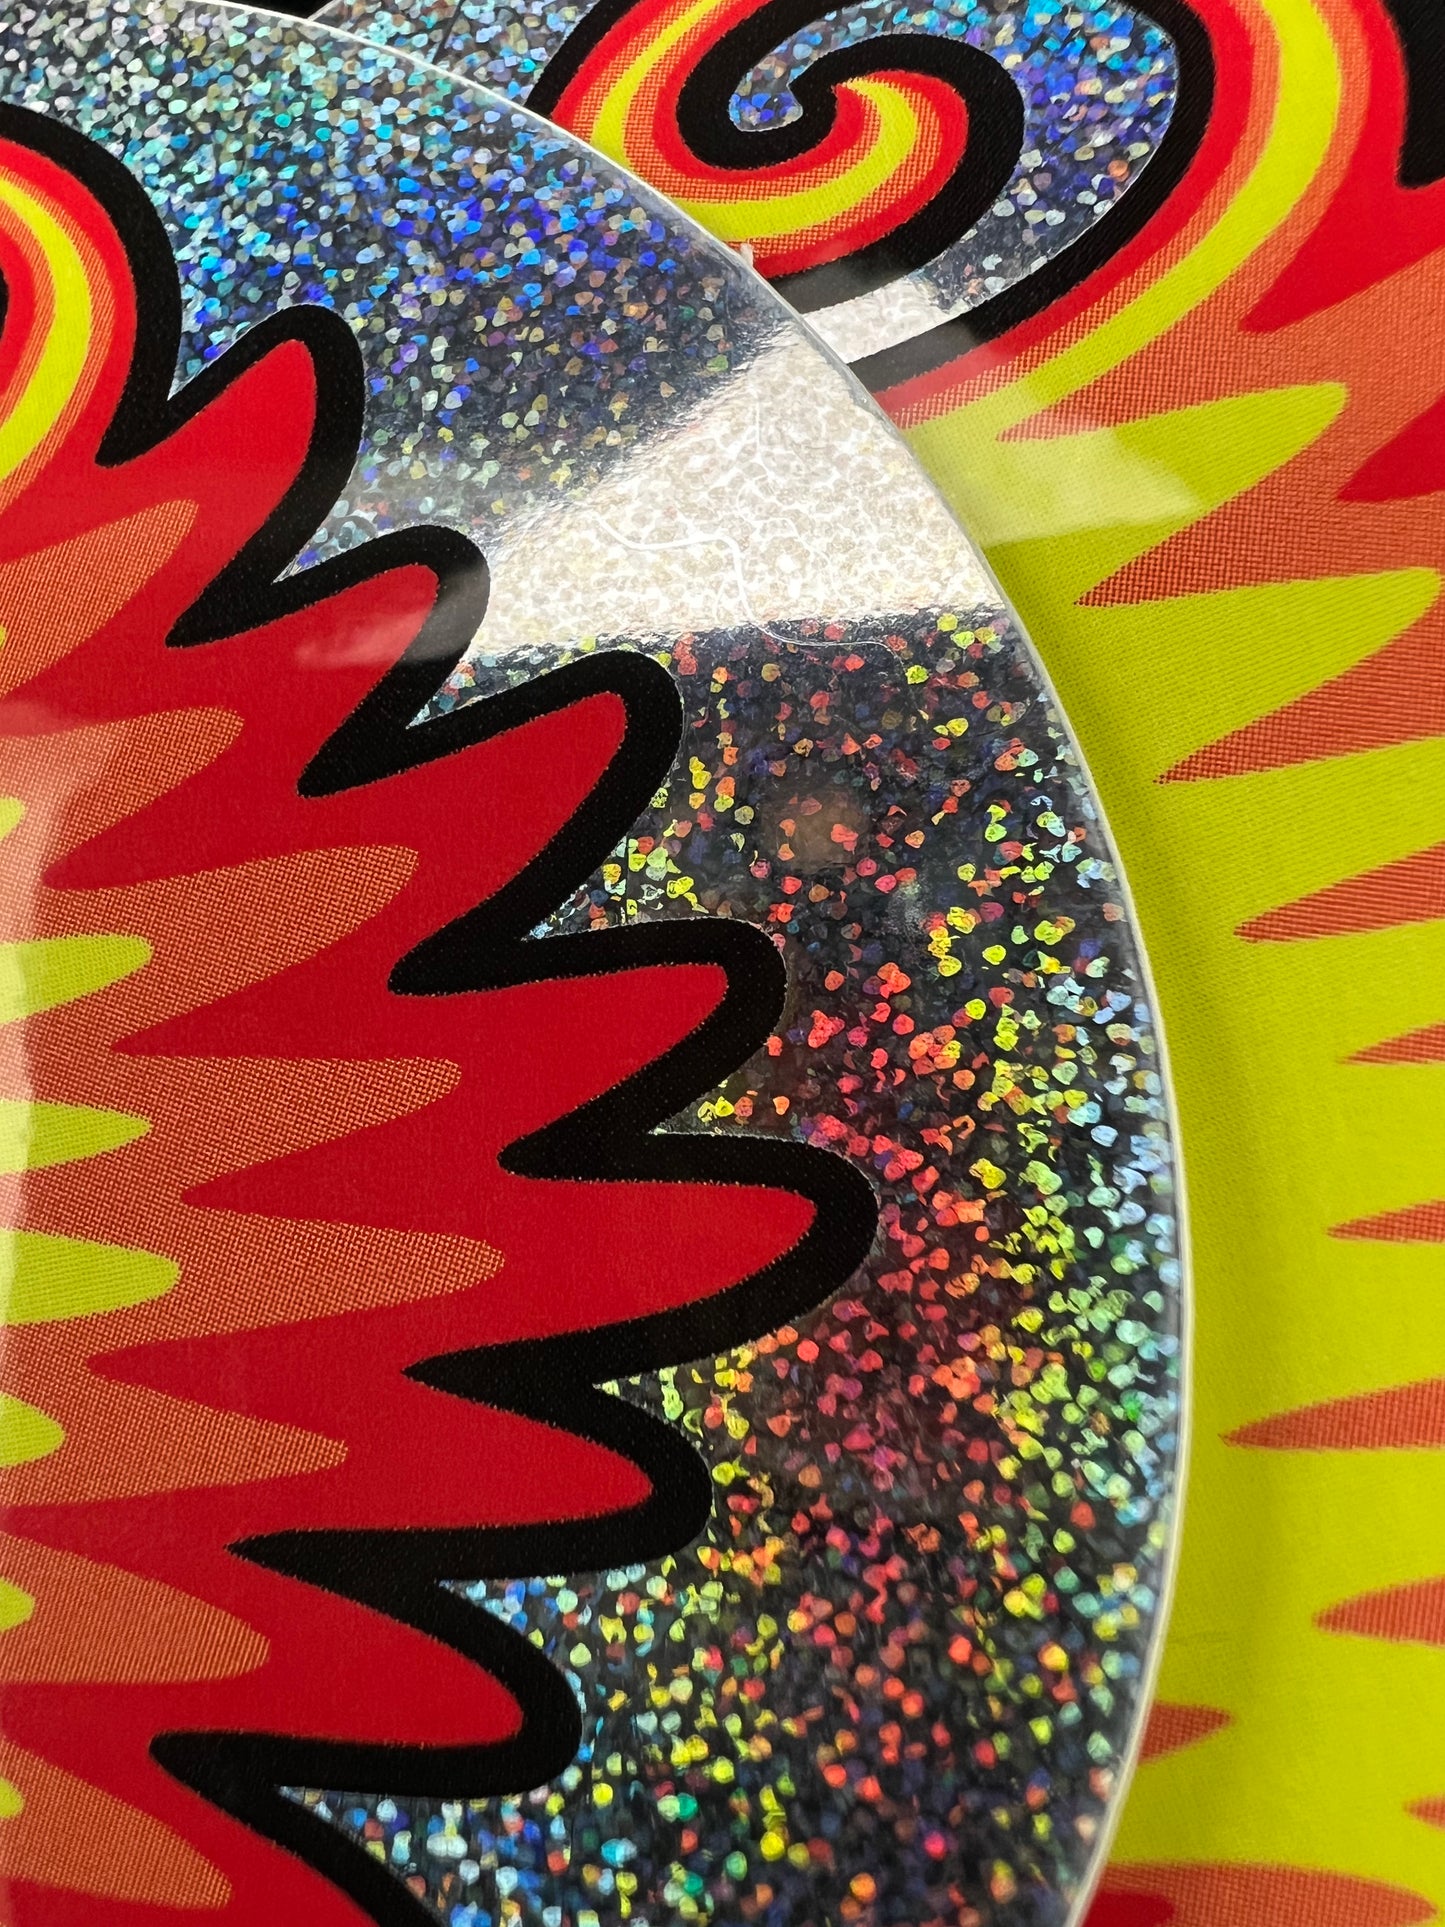 Holografischer Perücken-Wag-Aufkleber – 7,6 cm rund